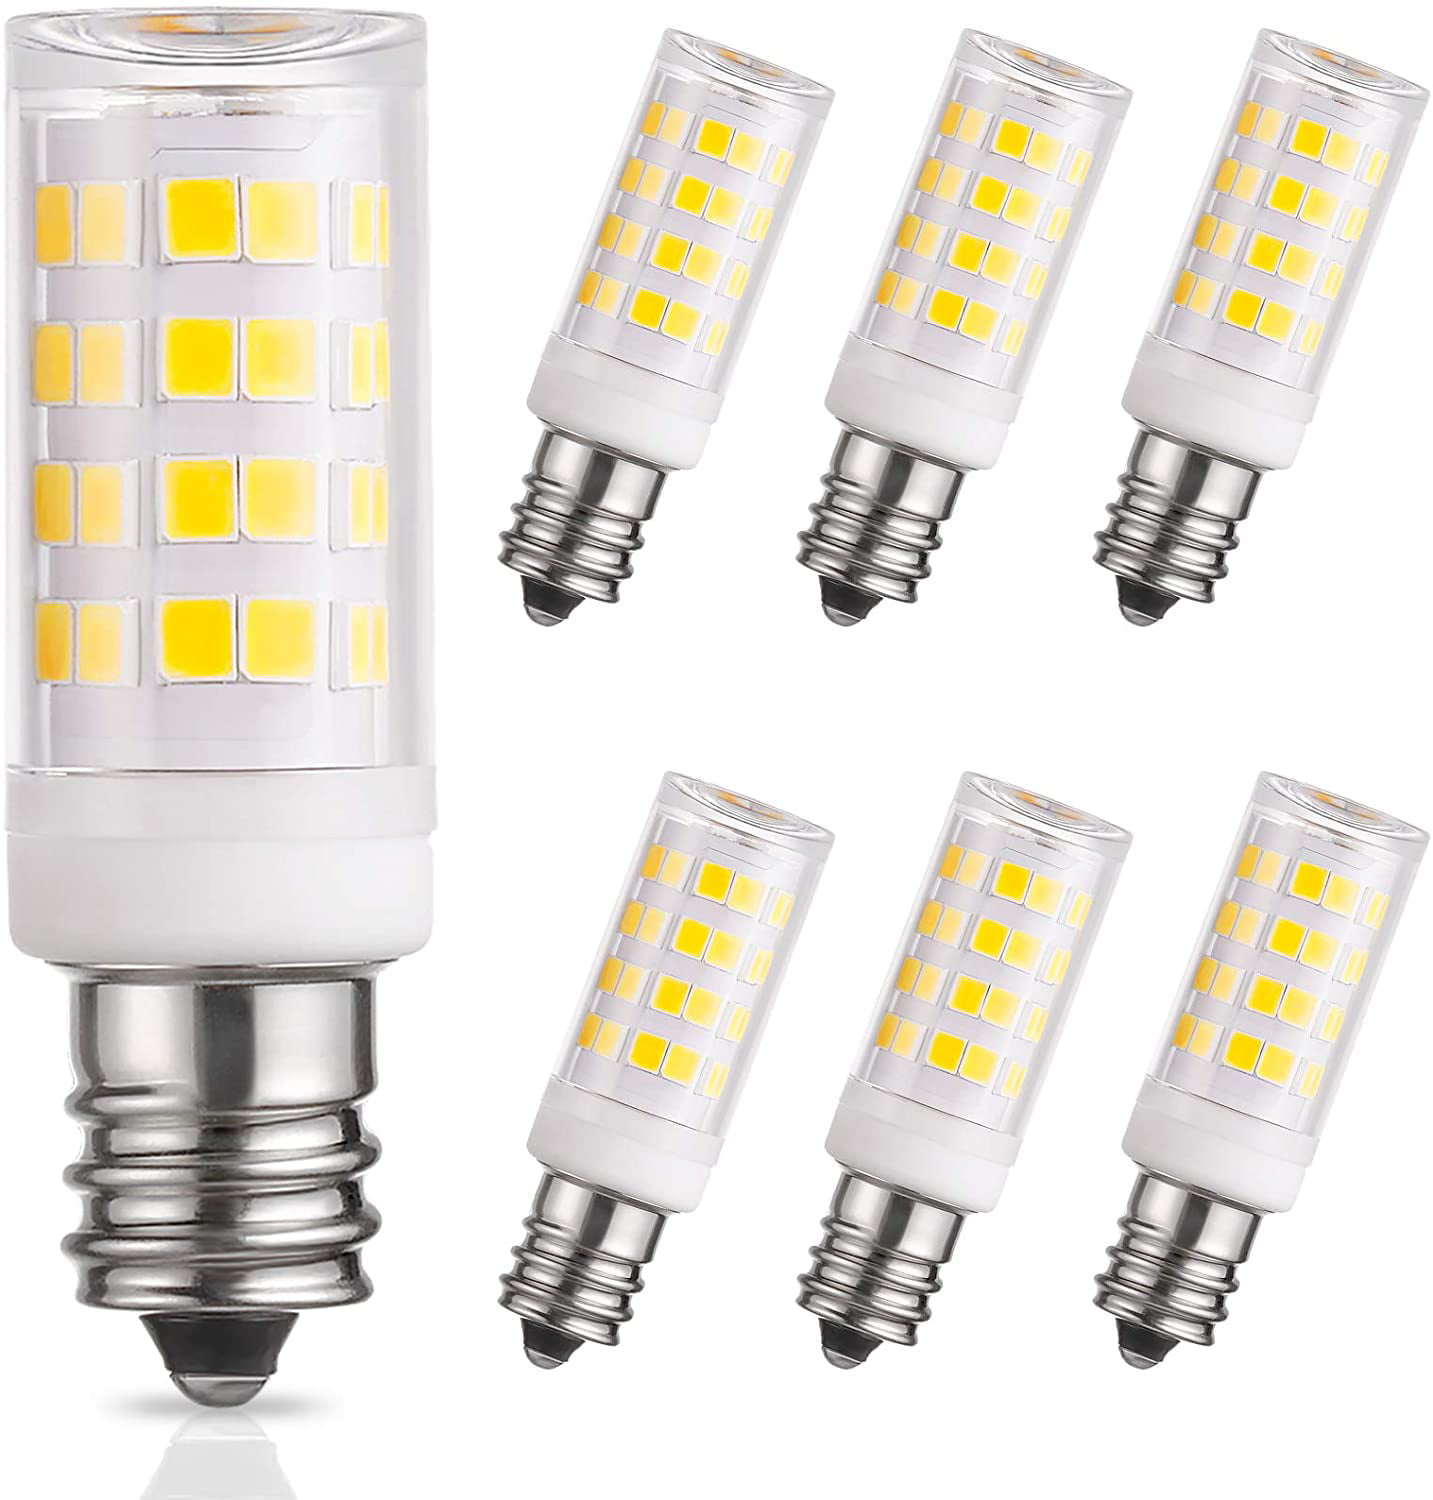 TSOCO E12 LED Bulbs,12W LED Chandelier Light Bulbs,100 Watt Equivalent,6000K Daylight White,1200LM,Non-Dimmable Ceiling Fan Light Bulbs,Pack of 3